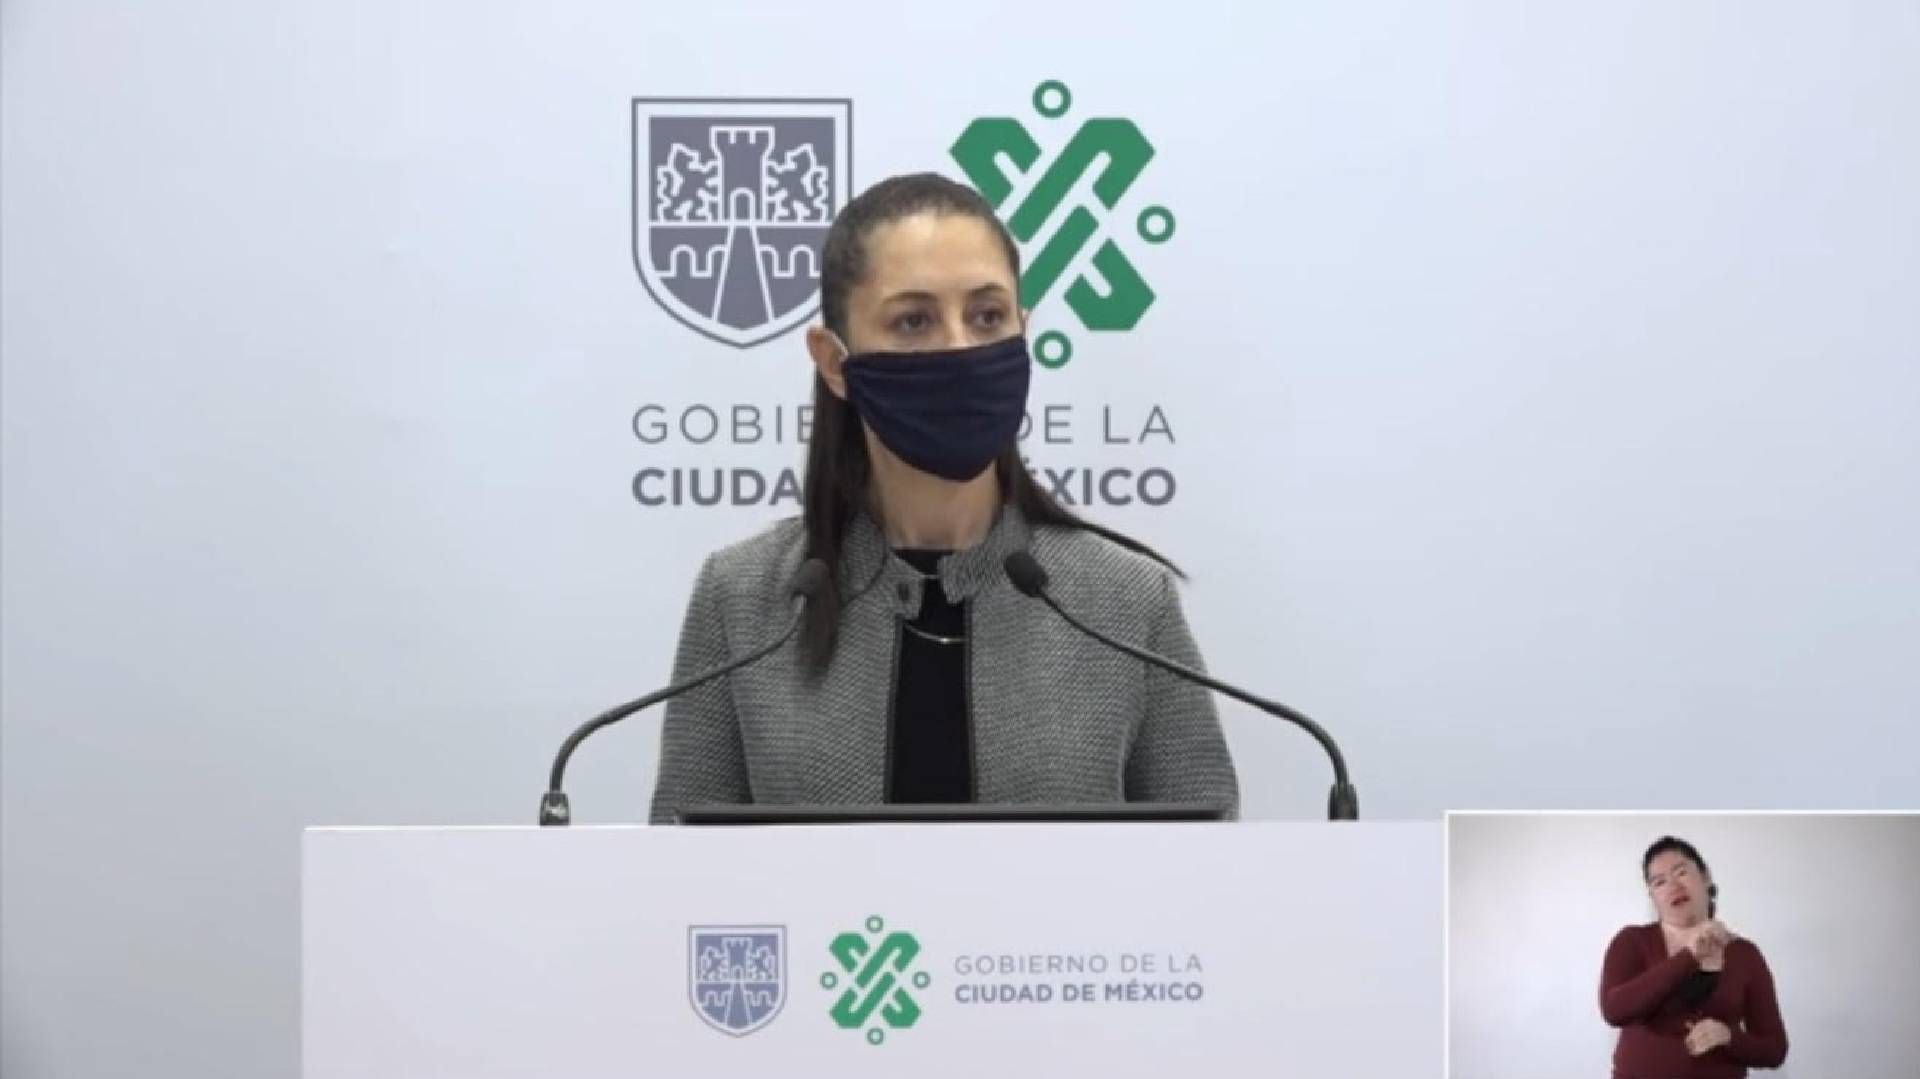 Claudia Sheinbaum Pardo, jefa de gobierno de la Ciudad de México (Foto: Captura de Pantalla)